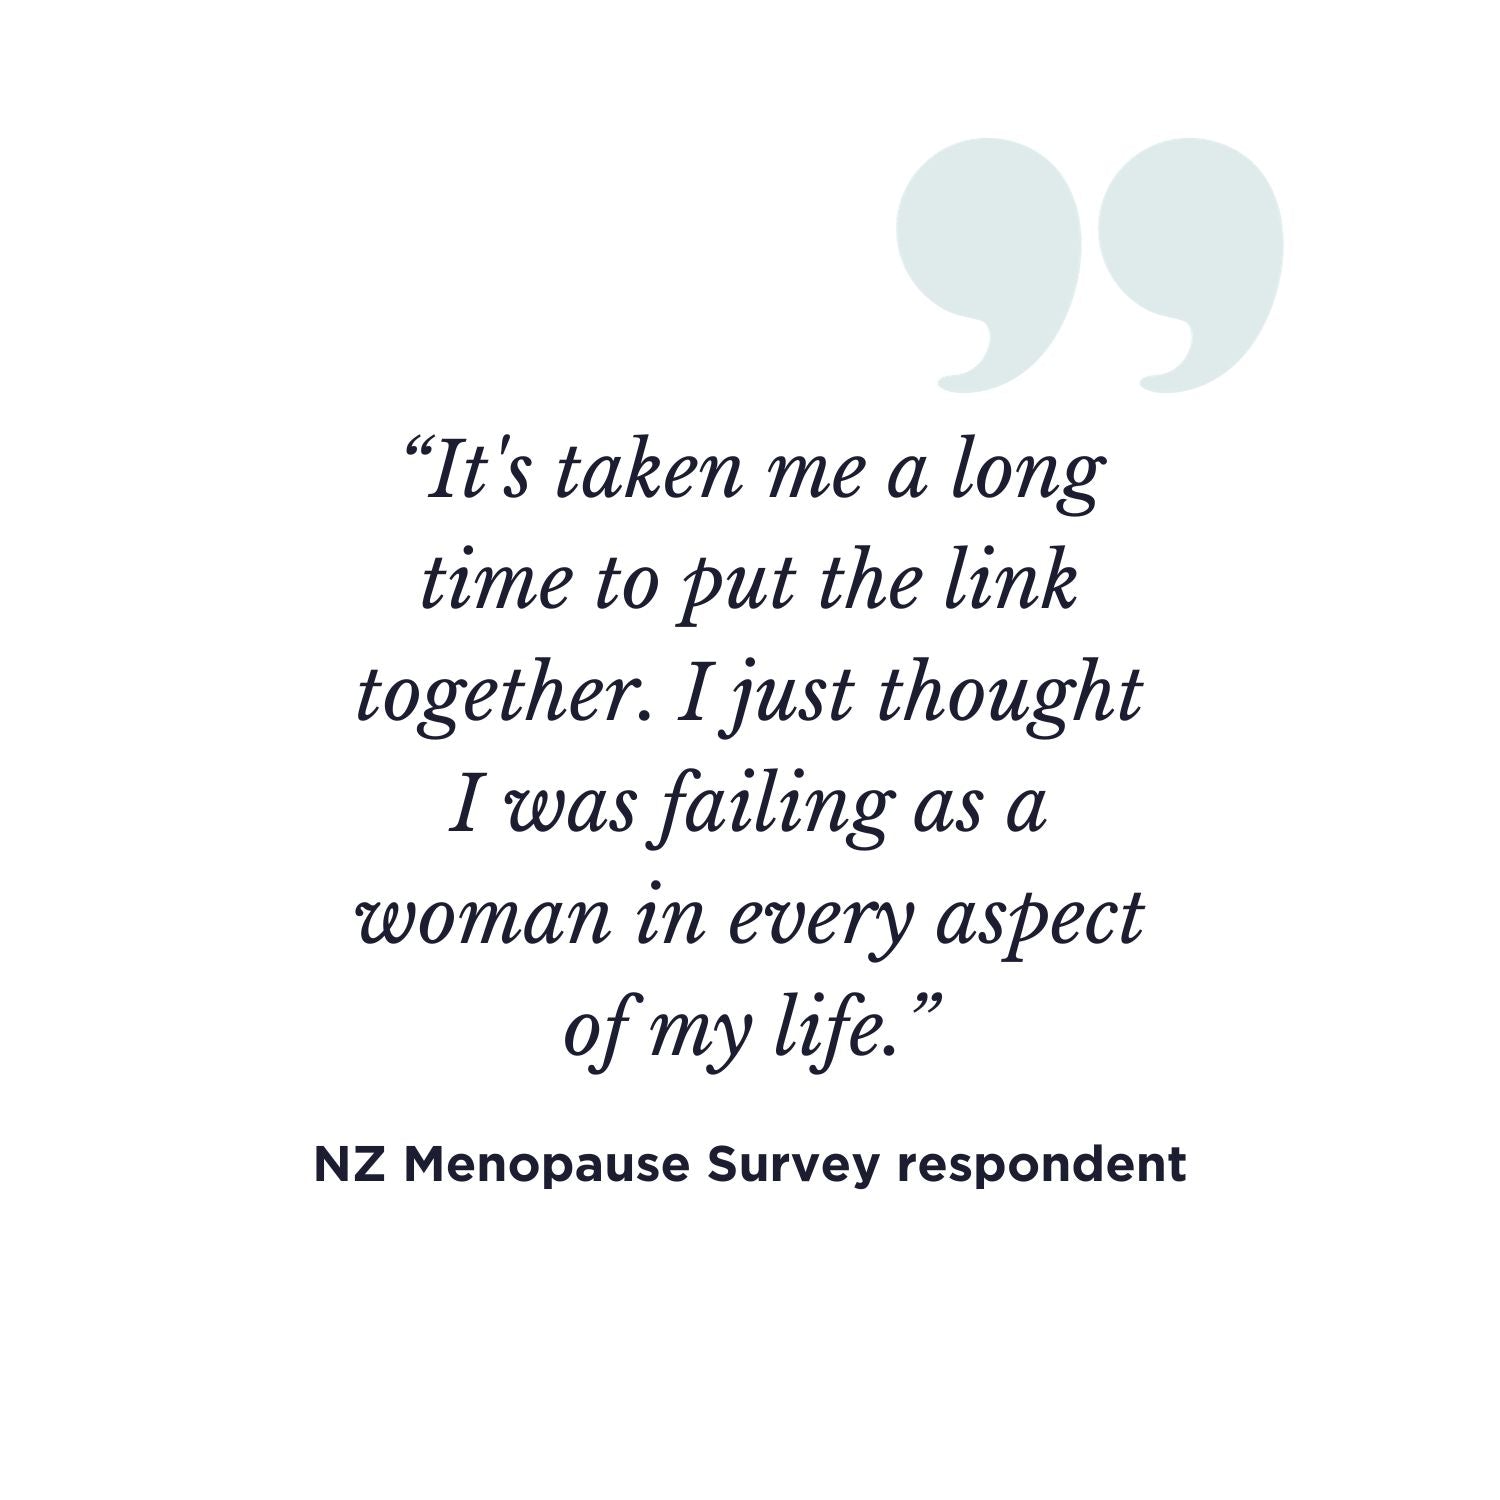 NZ Menodoctor Menopause survey statement 2